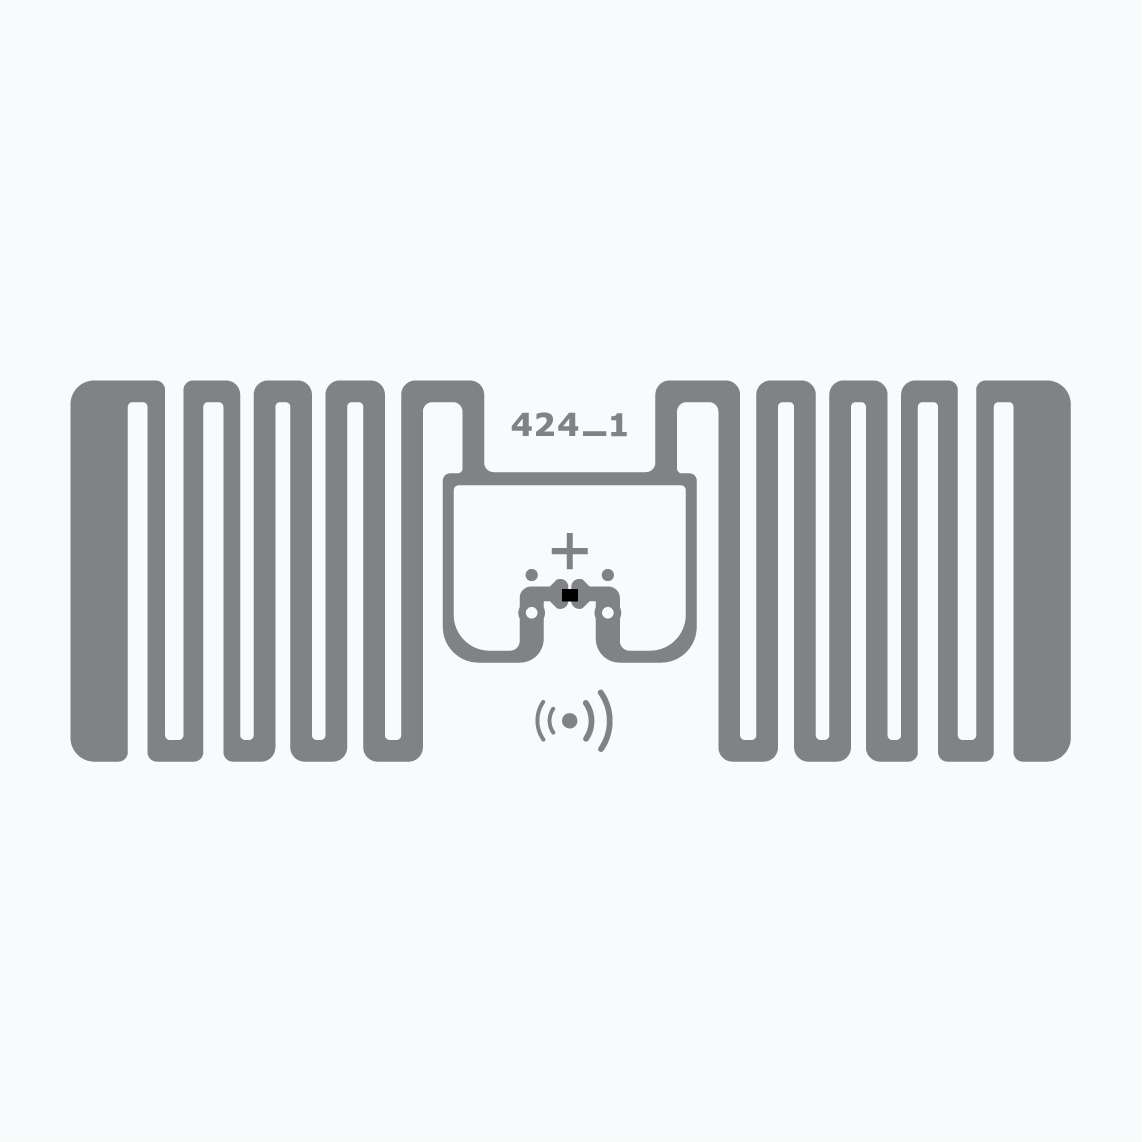 UHF RFID Inlay: Miniweb, Monza R6-P